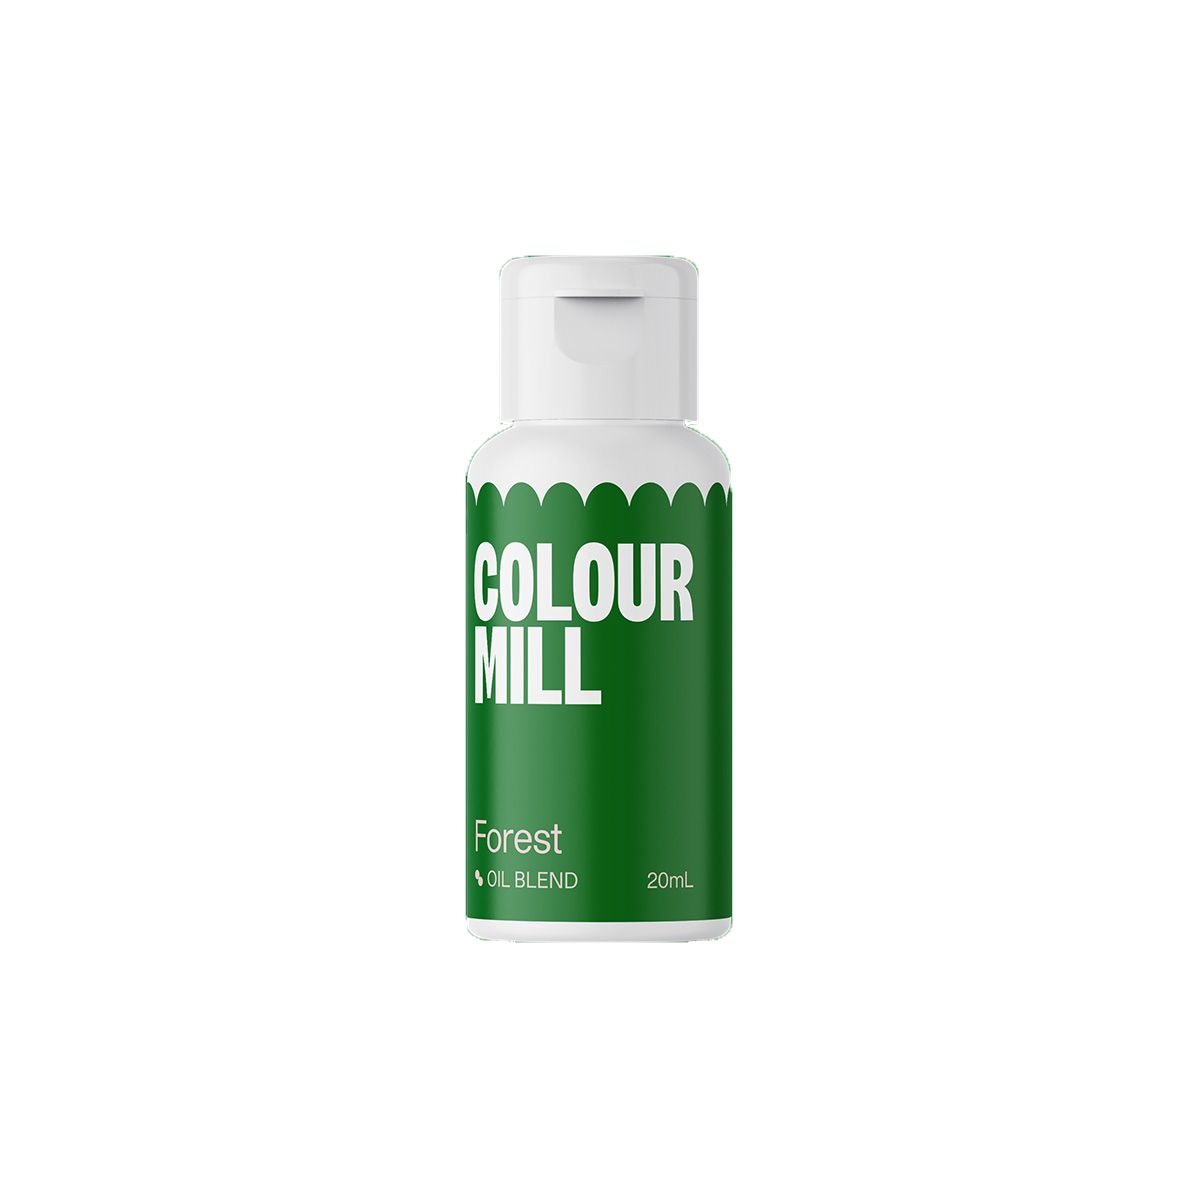 Χρώμα Forest Colour Mill 20ml